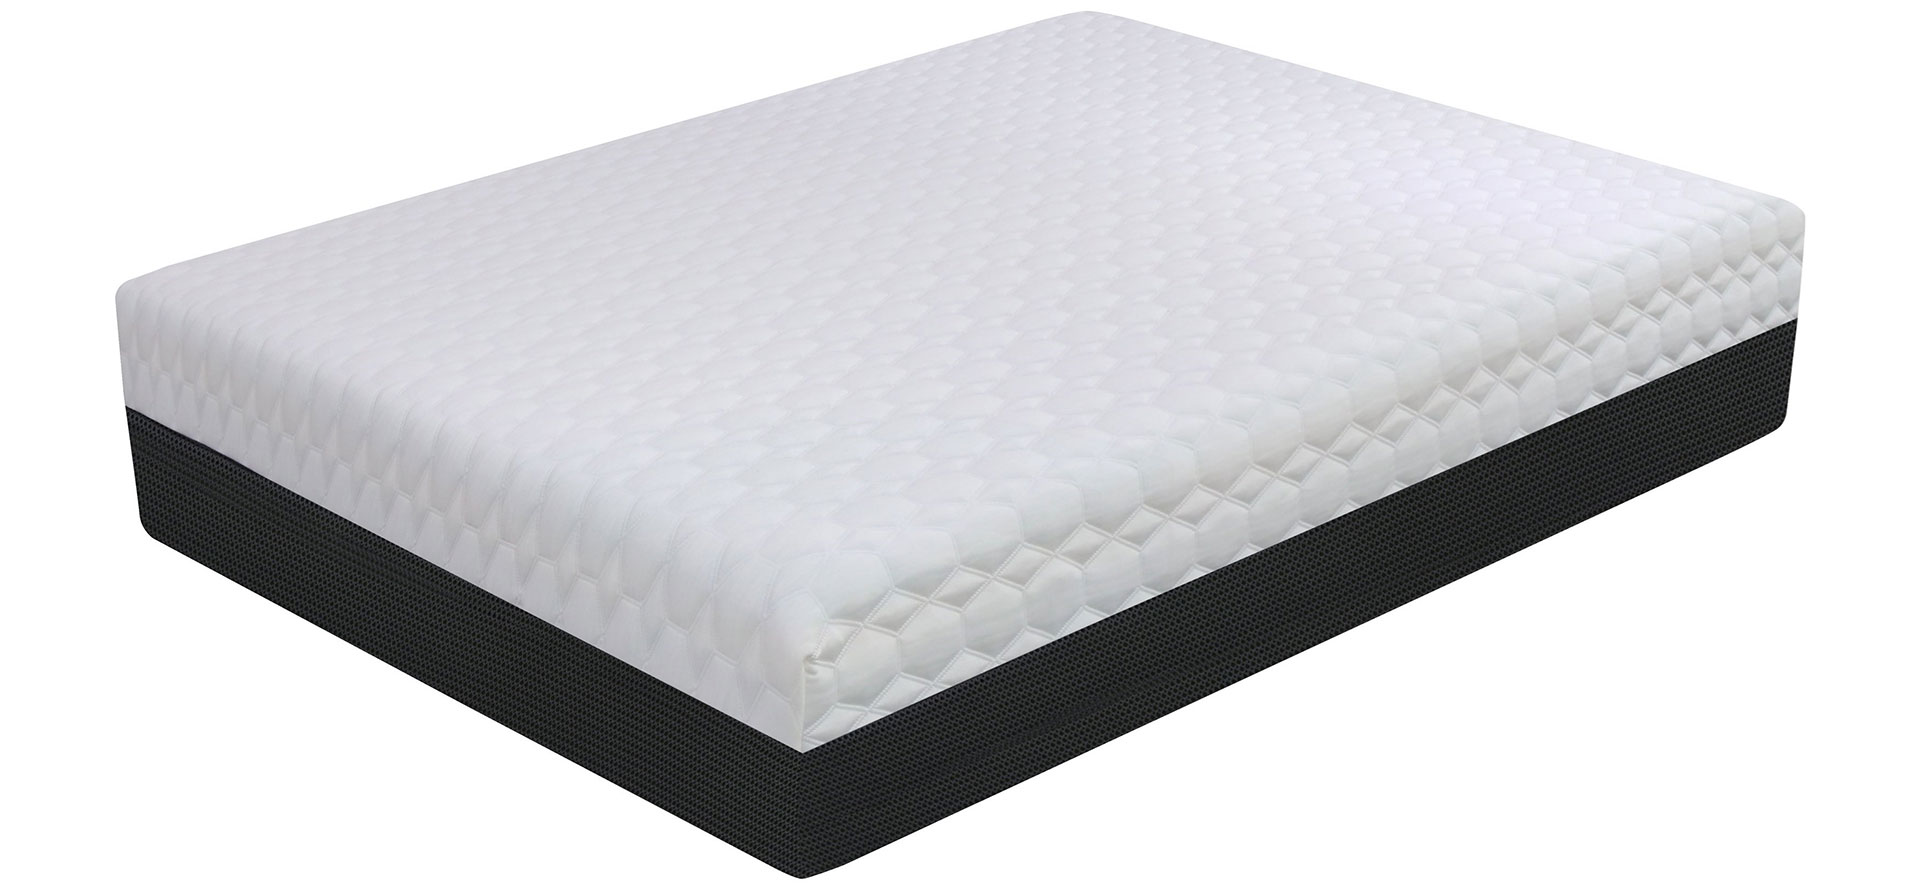 gel memory foam mattress queen.